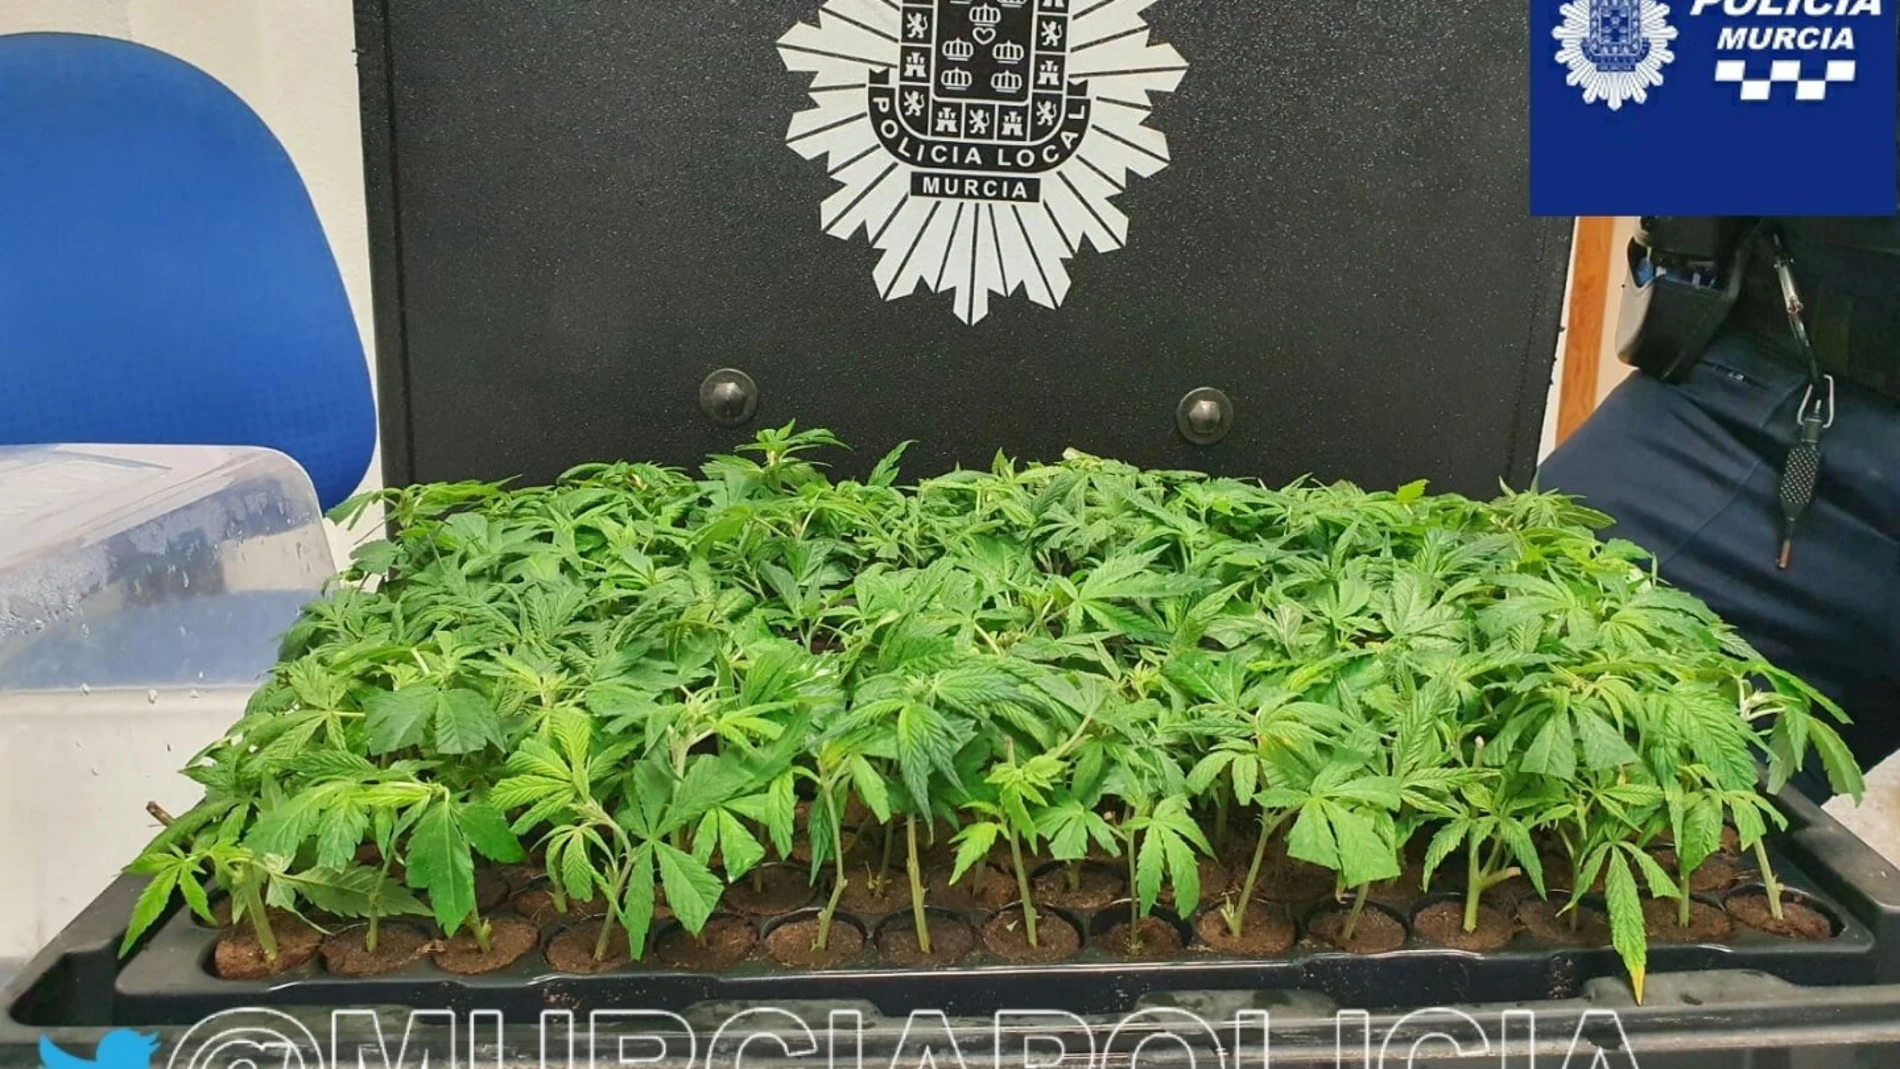 Plantas de marihuana interceptadas a un conductor en La Paz (Murcia)